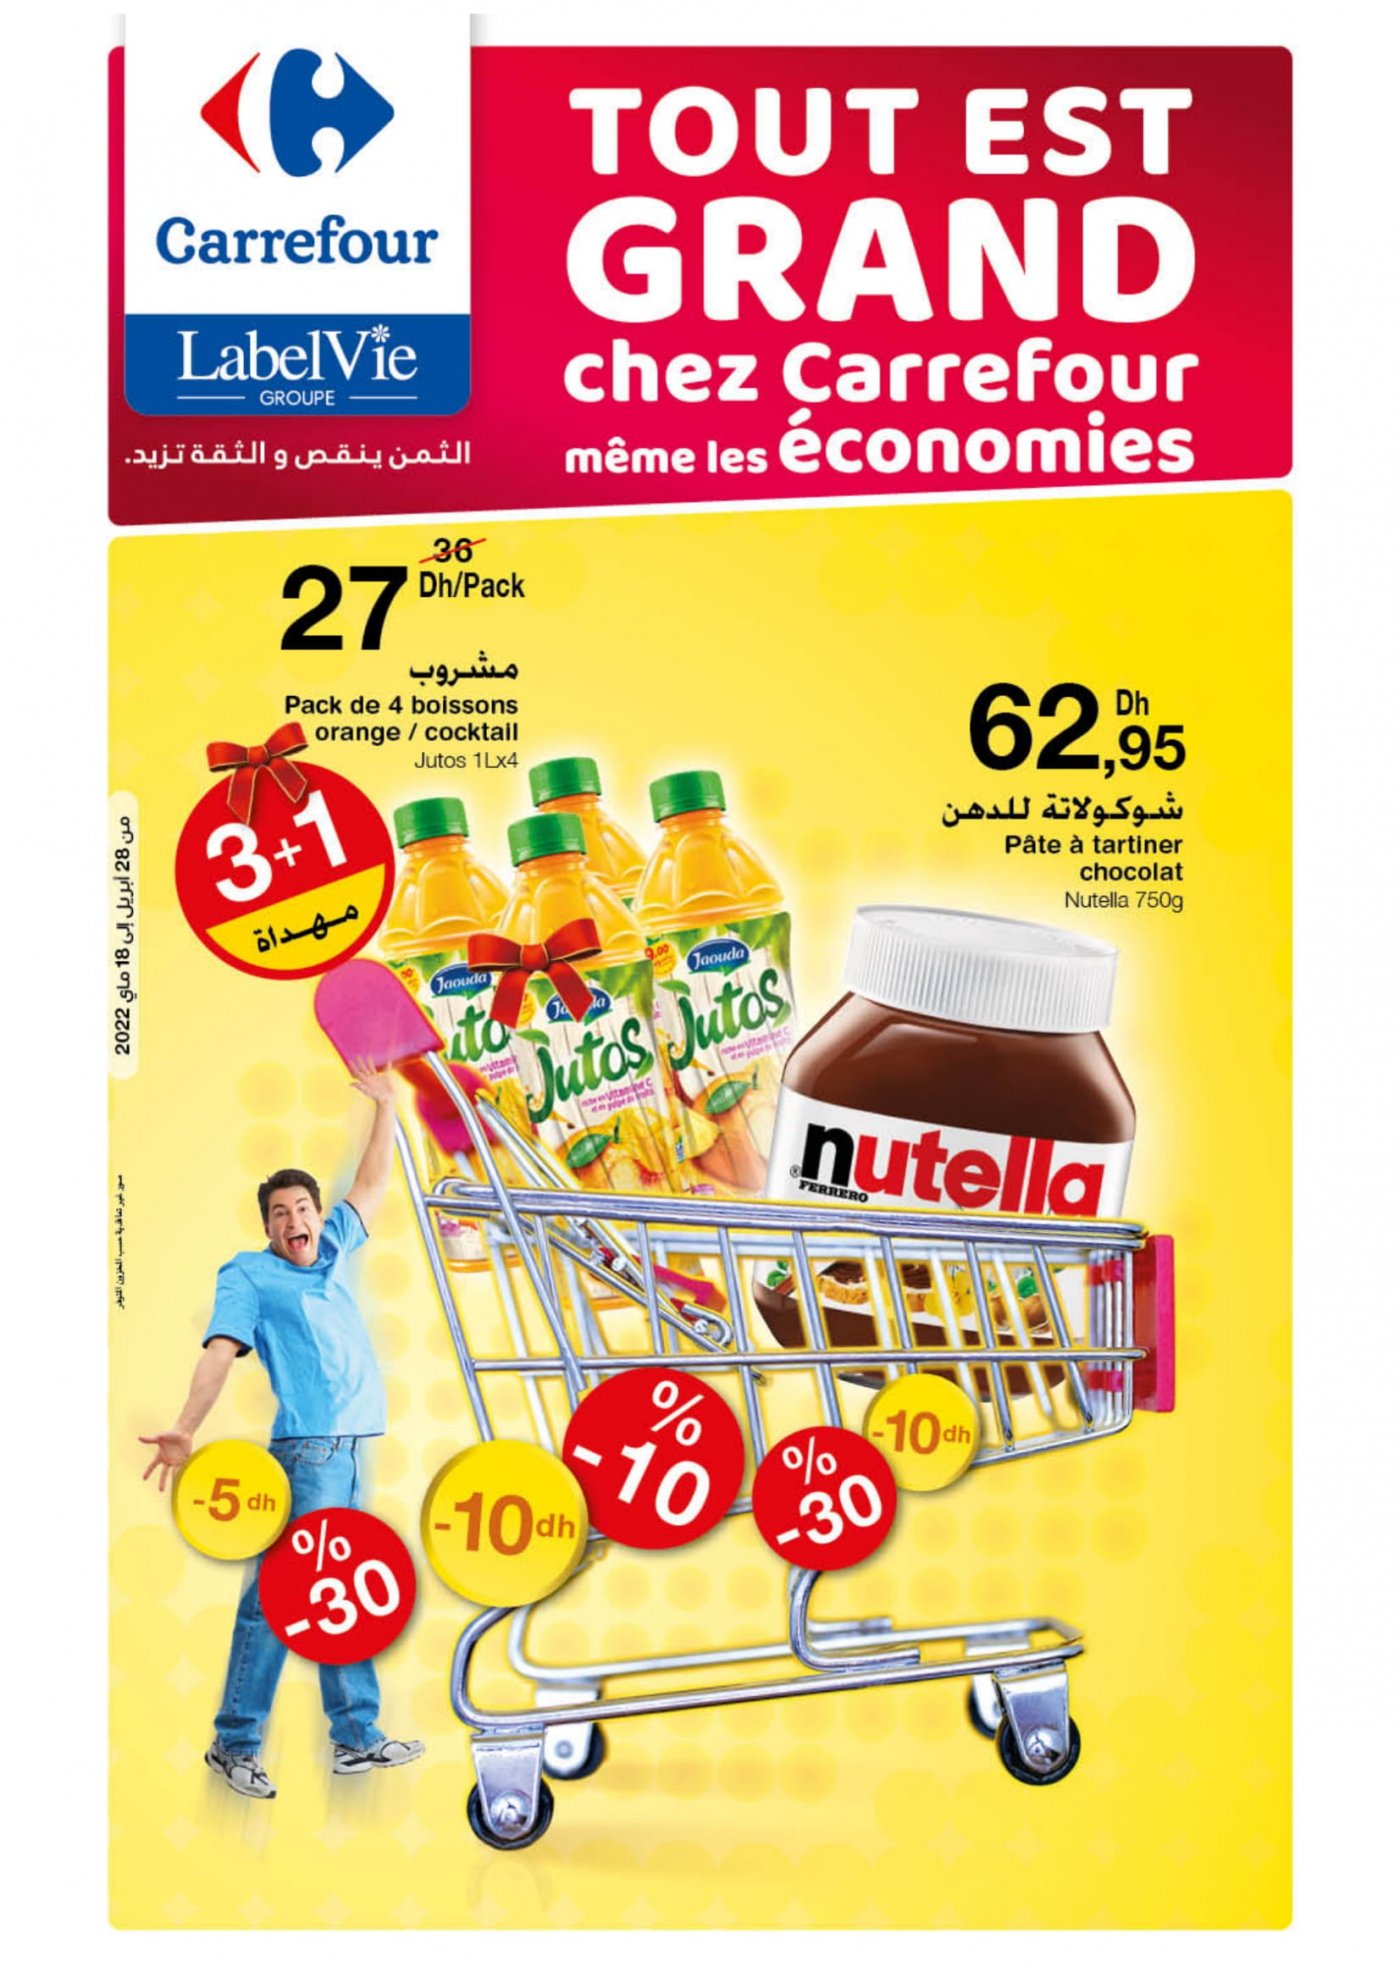 Catalogue Carrefour Mai 2022 spécial Grandes économies décembre 2022